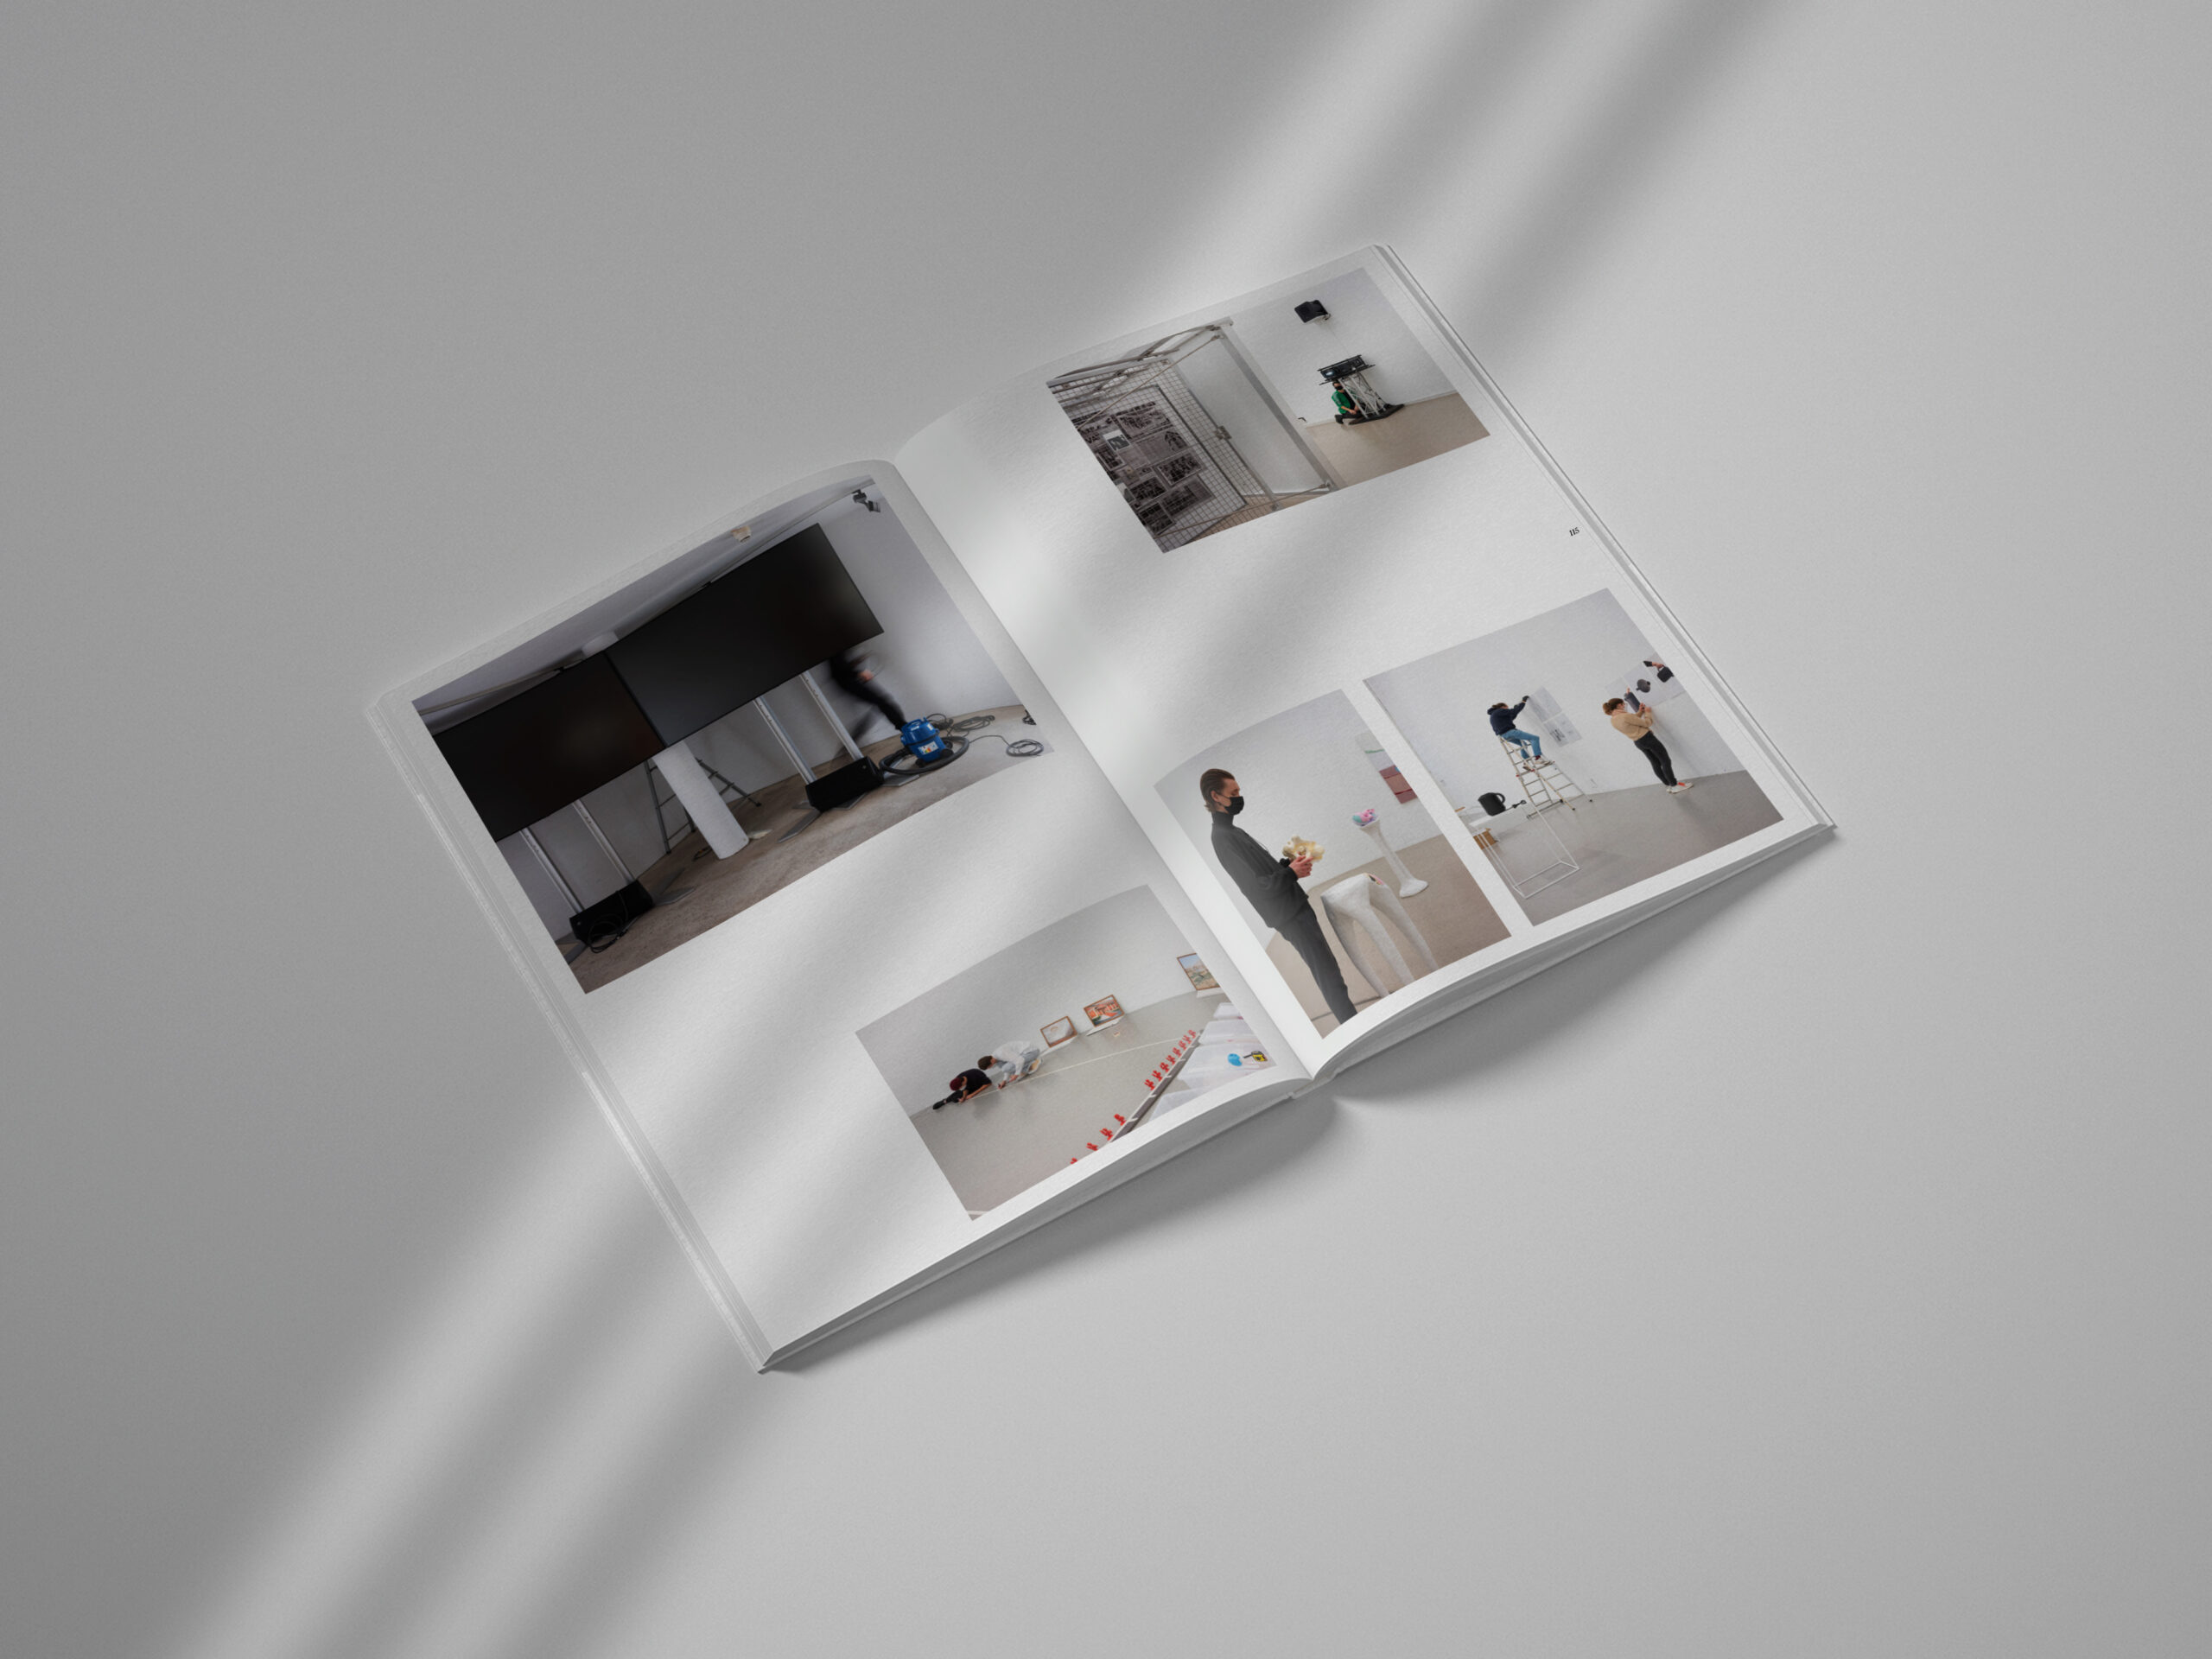 examen-exhibitiondesign-management-servicedesign-kunstkaltalog-publikation-13